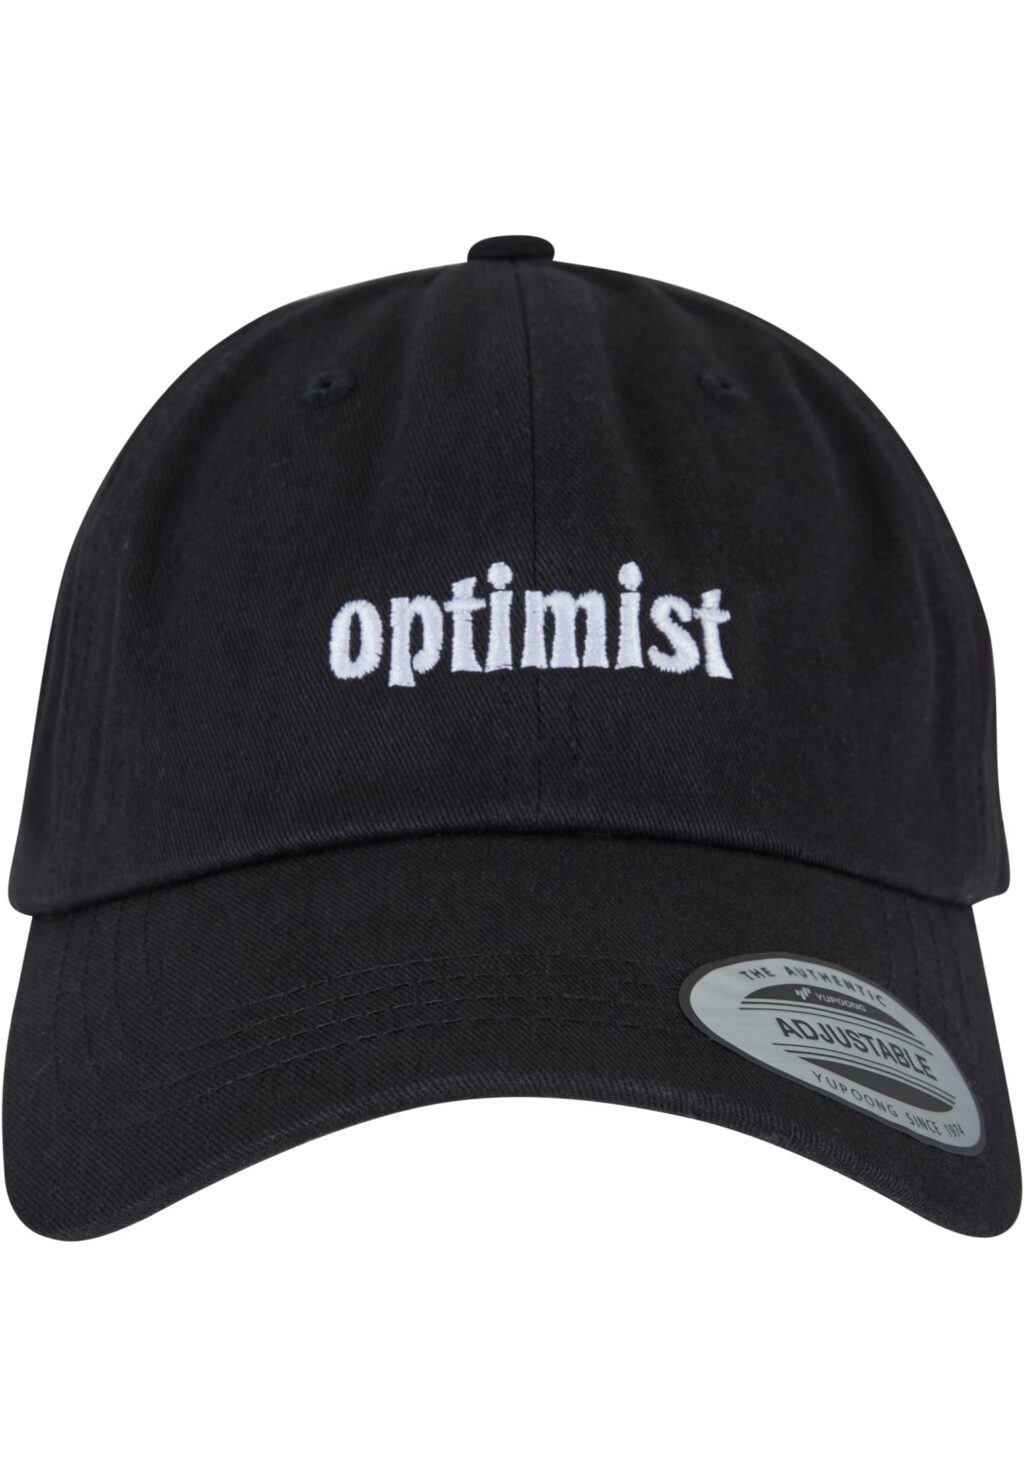 Optimist Cap black one BE068